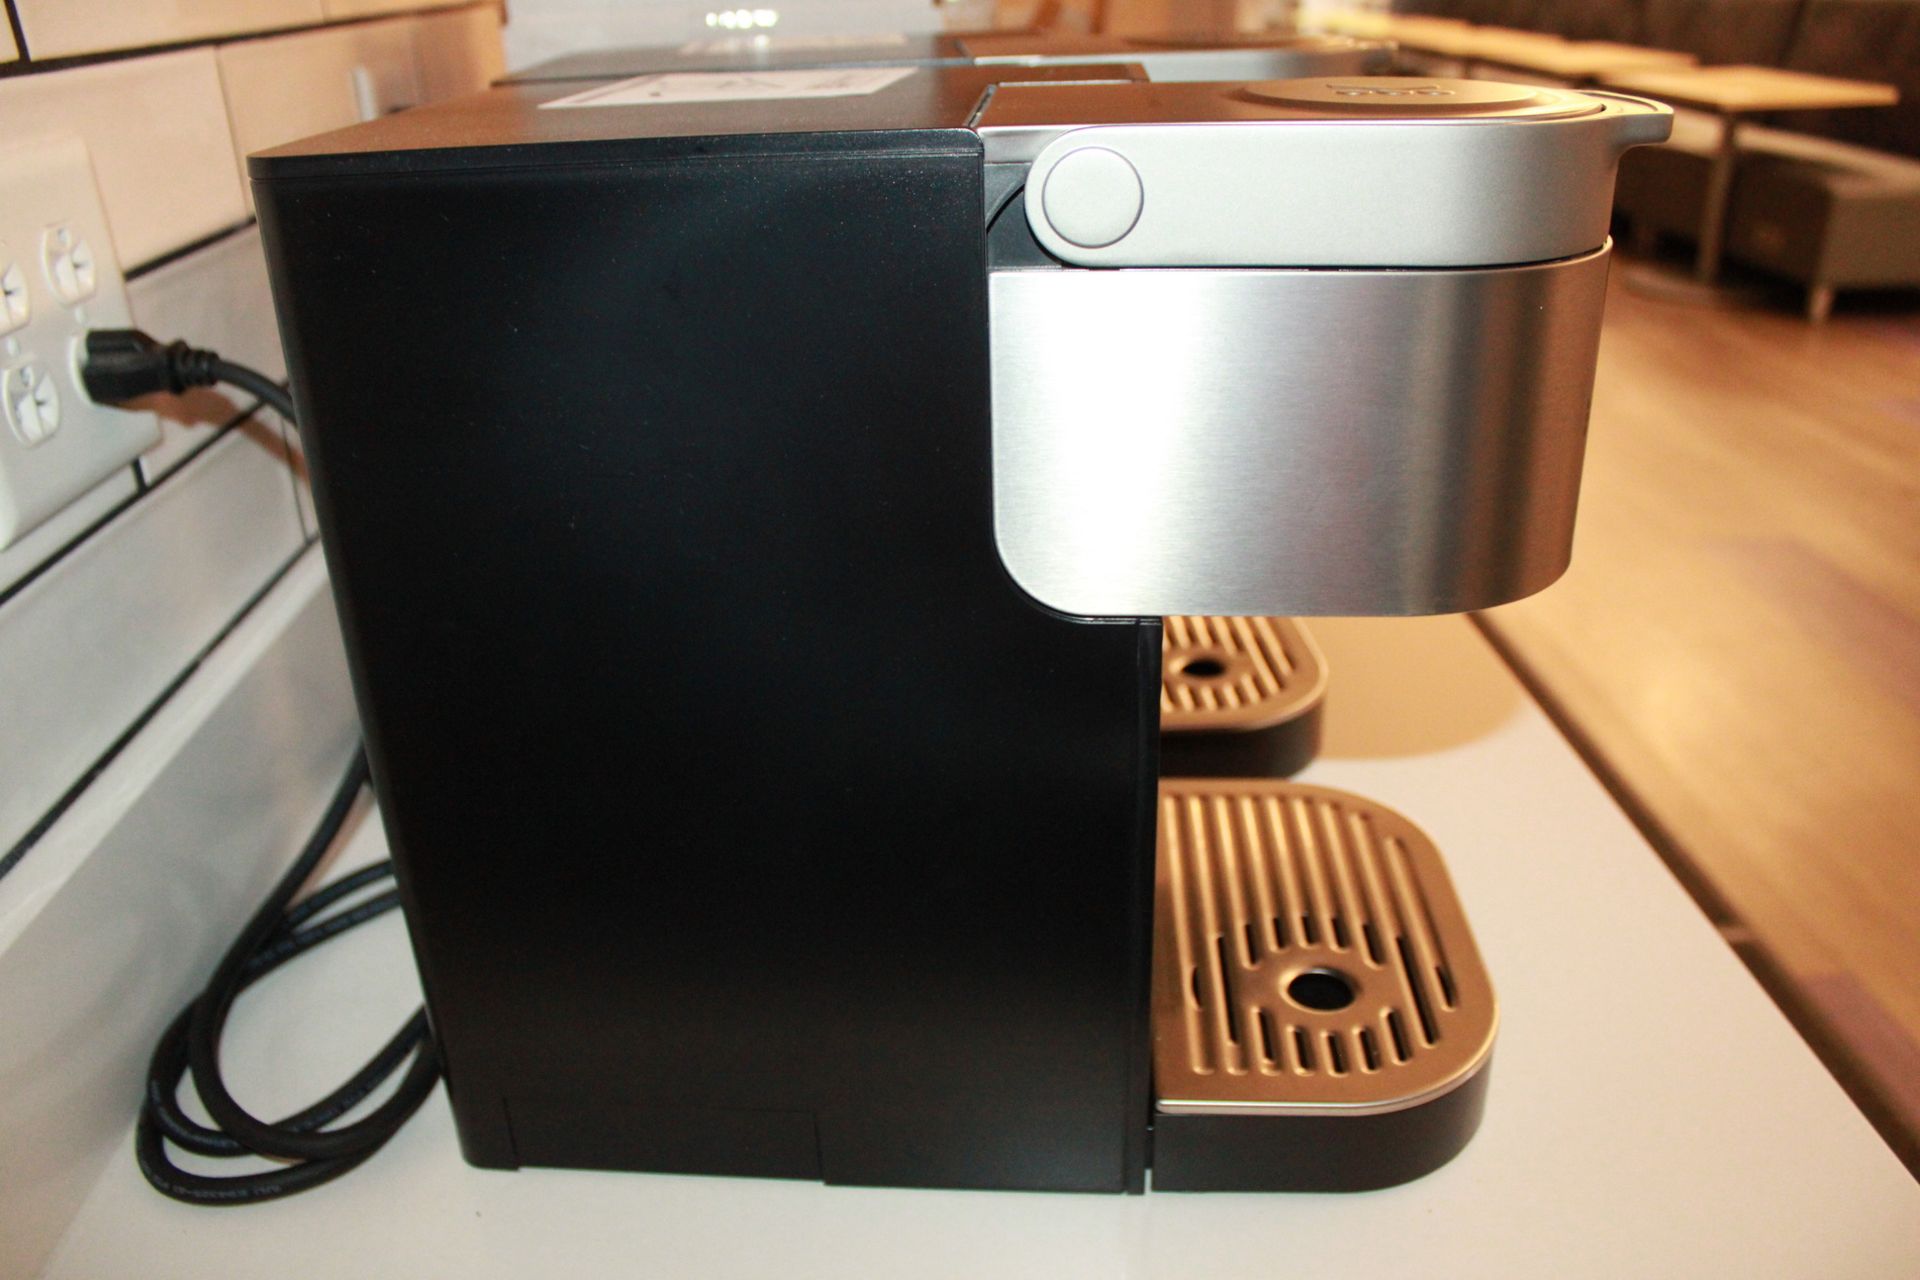 Keurig Commercial Series Coffee Maker Model K-2501 - Image 2 of 2